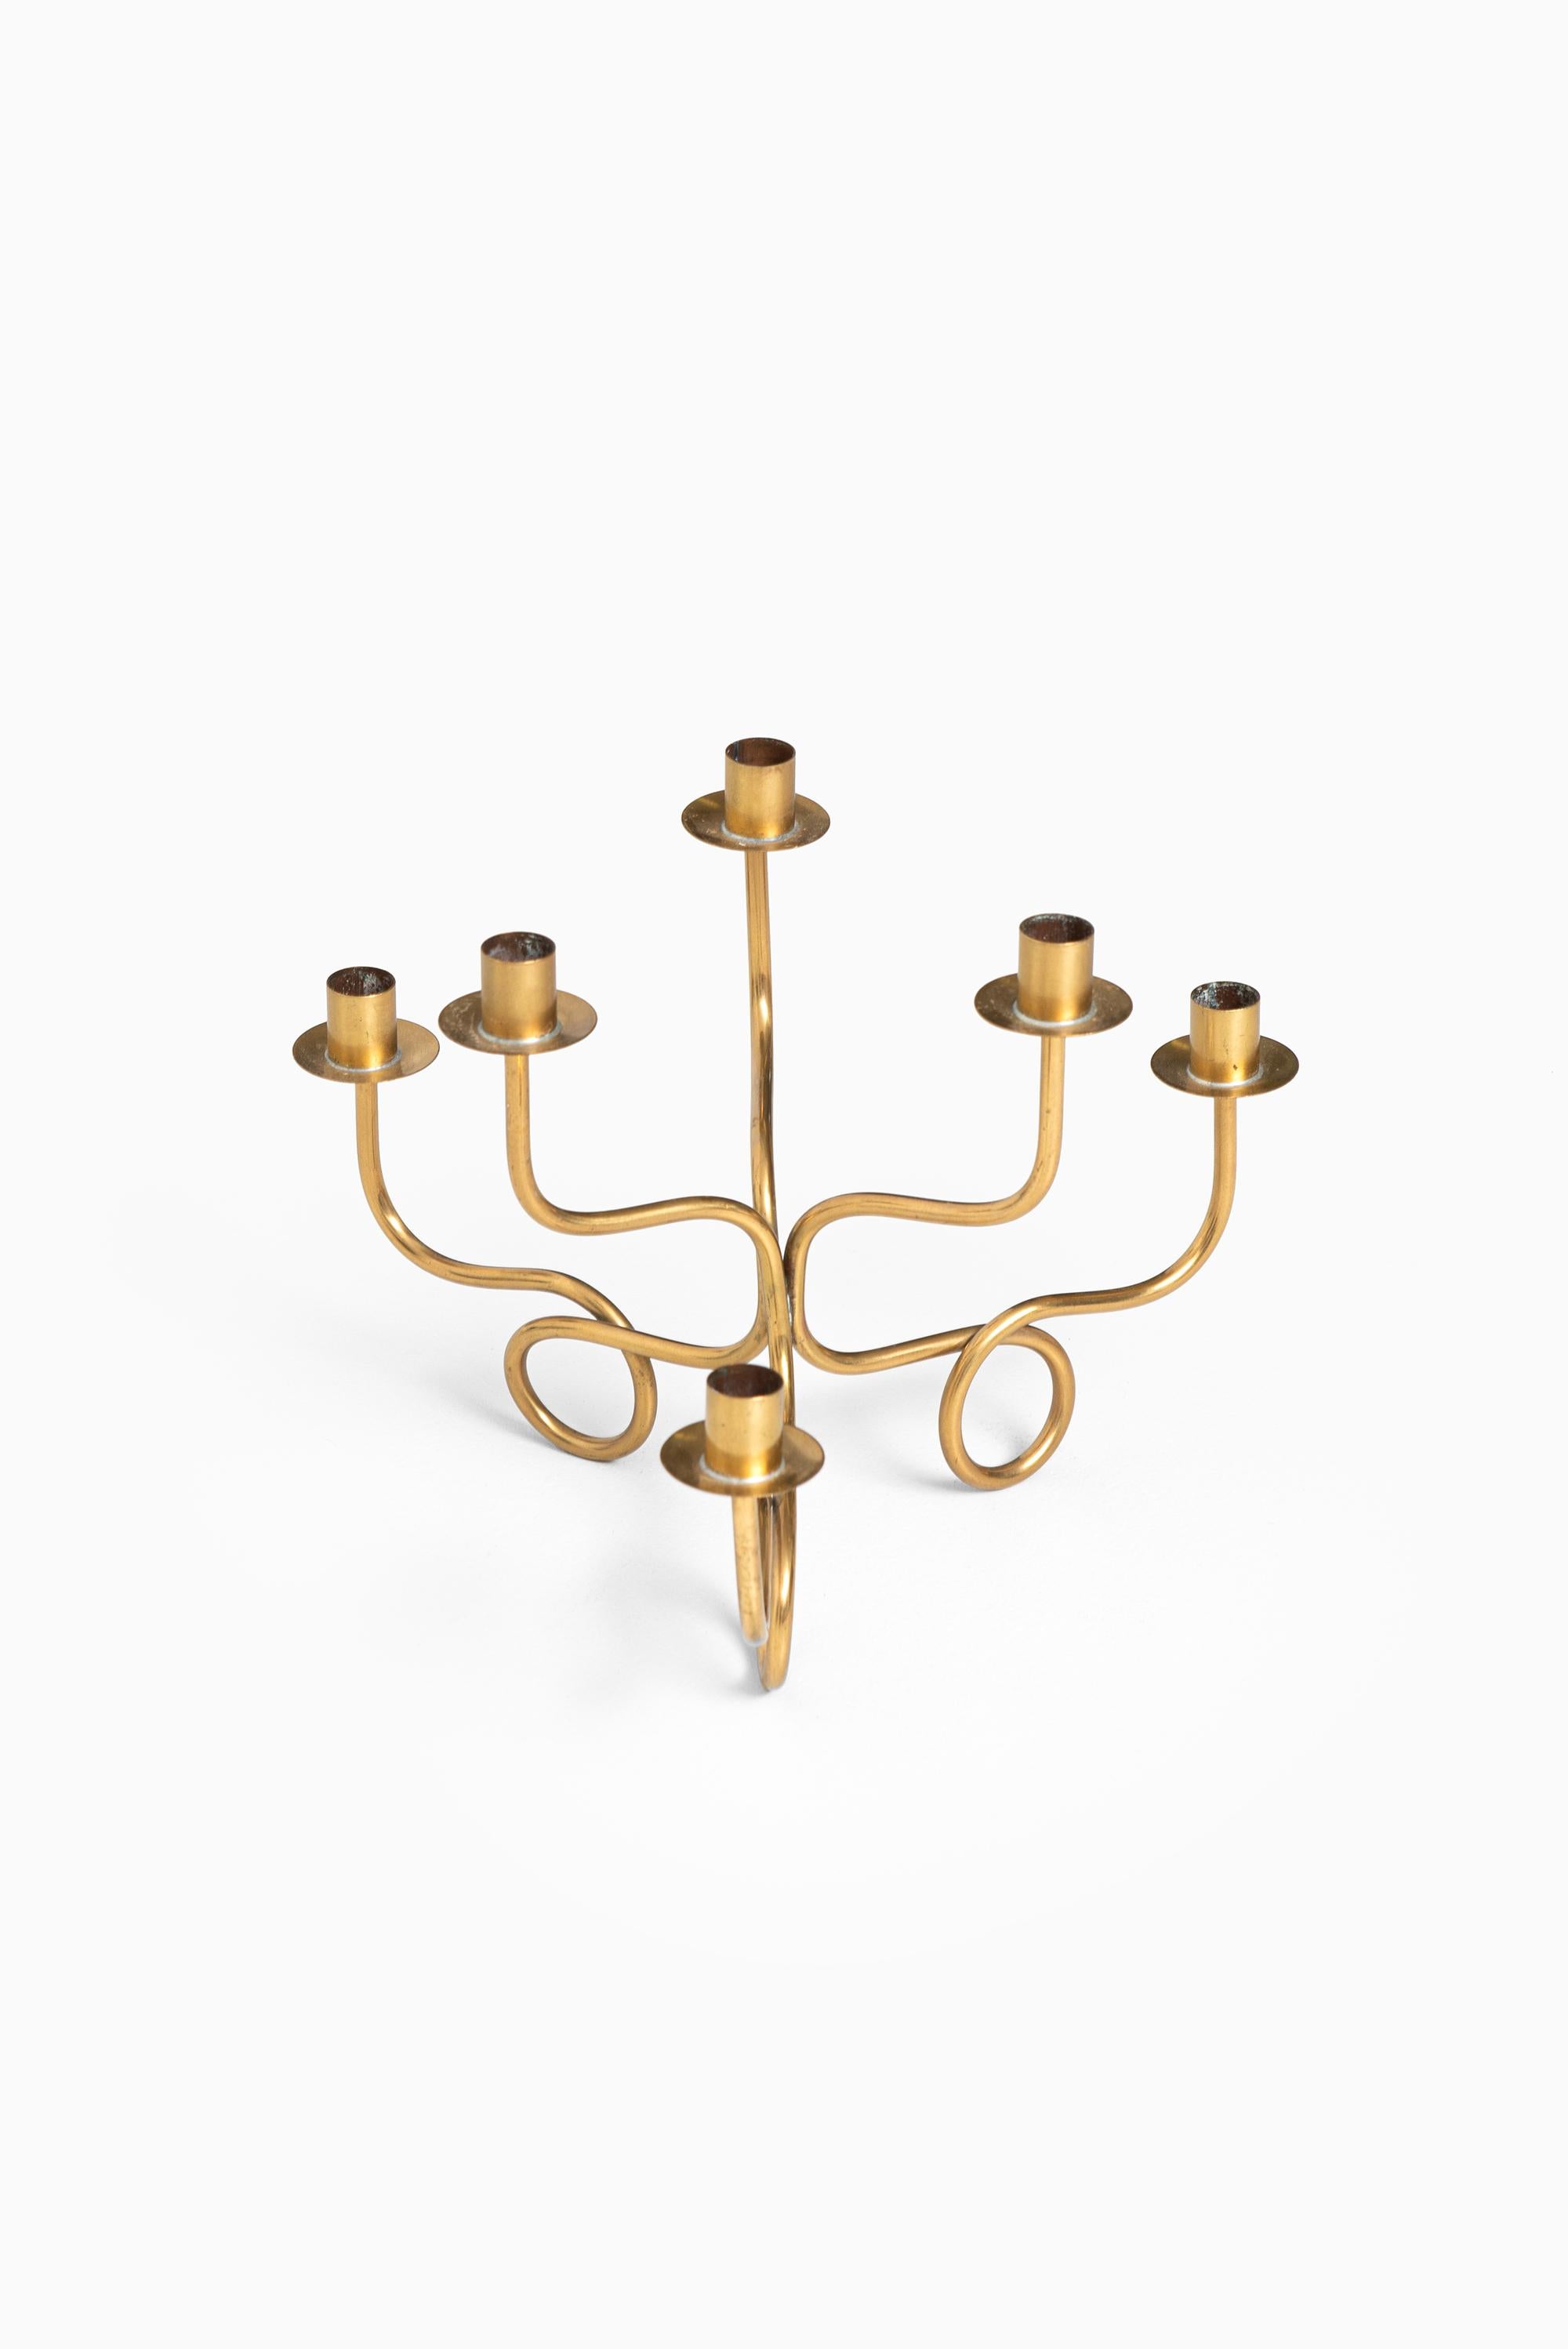 Candlestick in brass designed by Josef Frank. Produced by Svenskt tenn in Sweden.